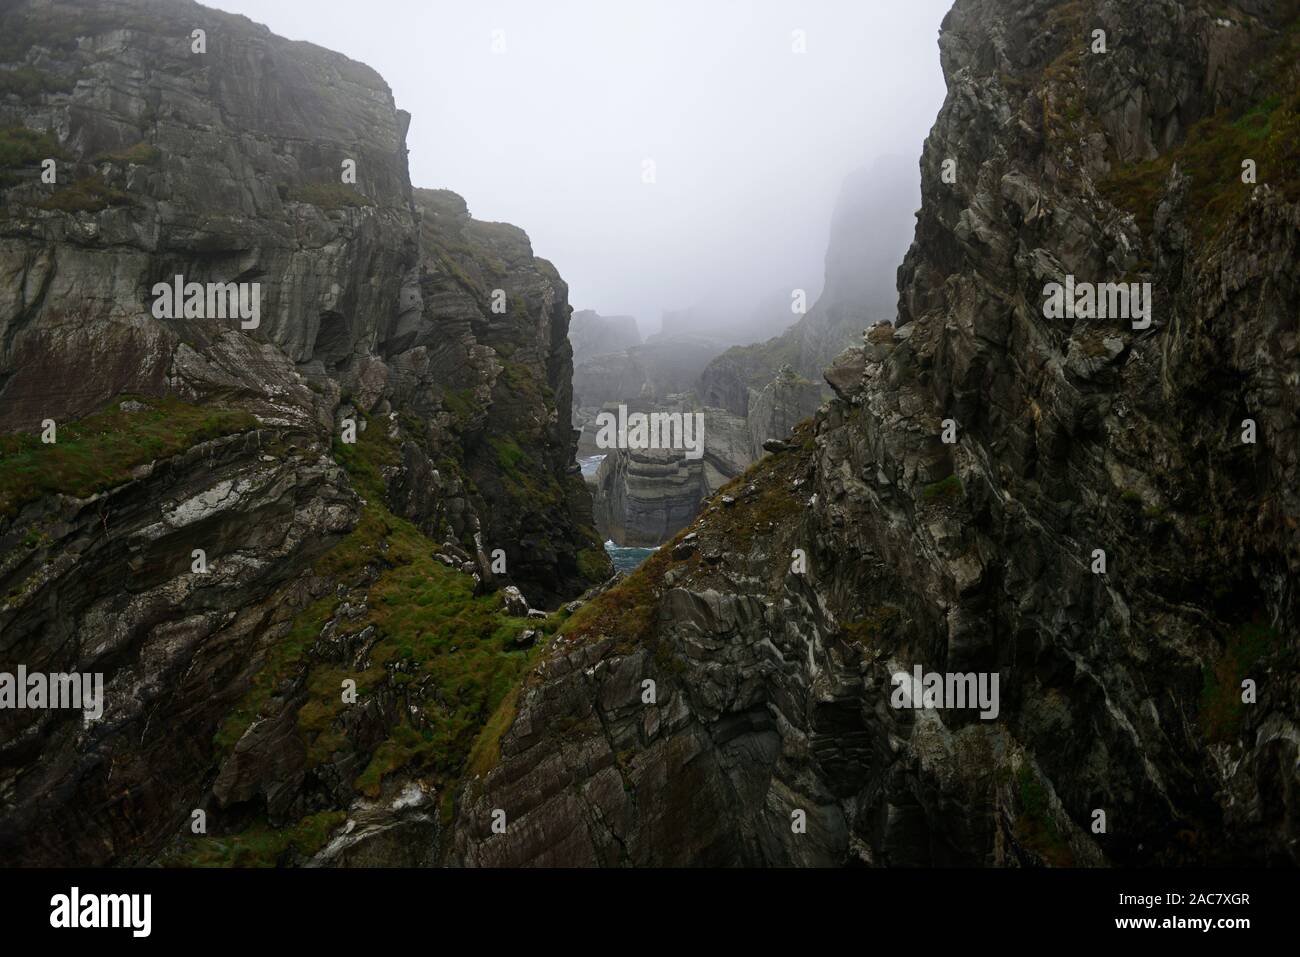 Klippen, Mizen Head, südwestlichsten Punkt von Irland, Nebel, Nieselregen, schlechtes Wetter, wilden Atlantik weg, touristische Attraktion, RM Irland Stockfoto